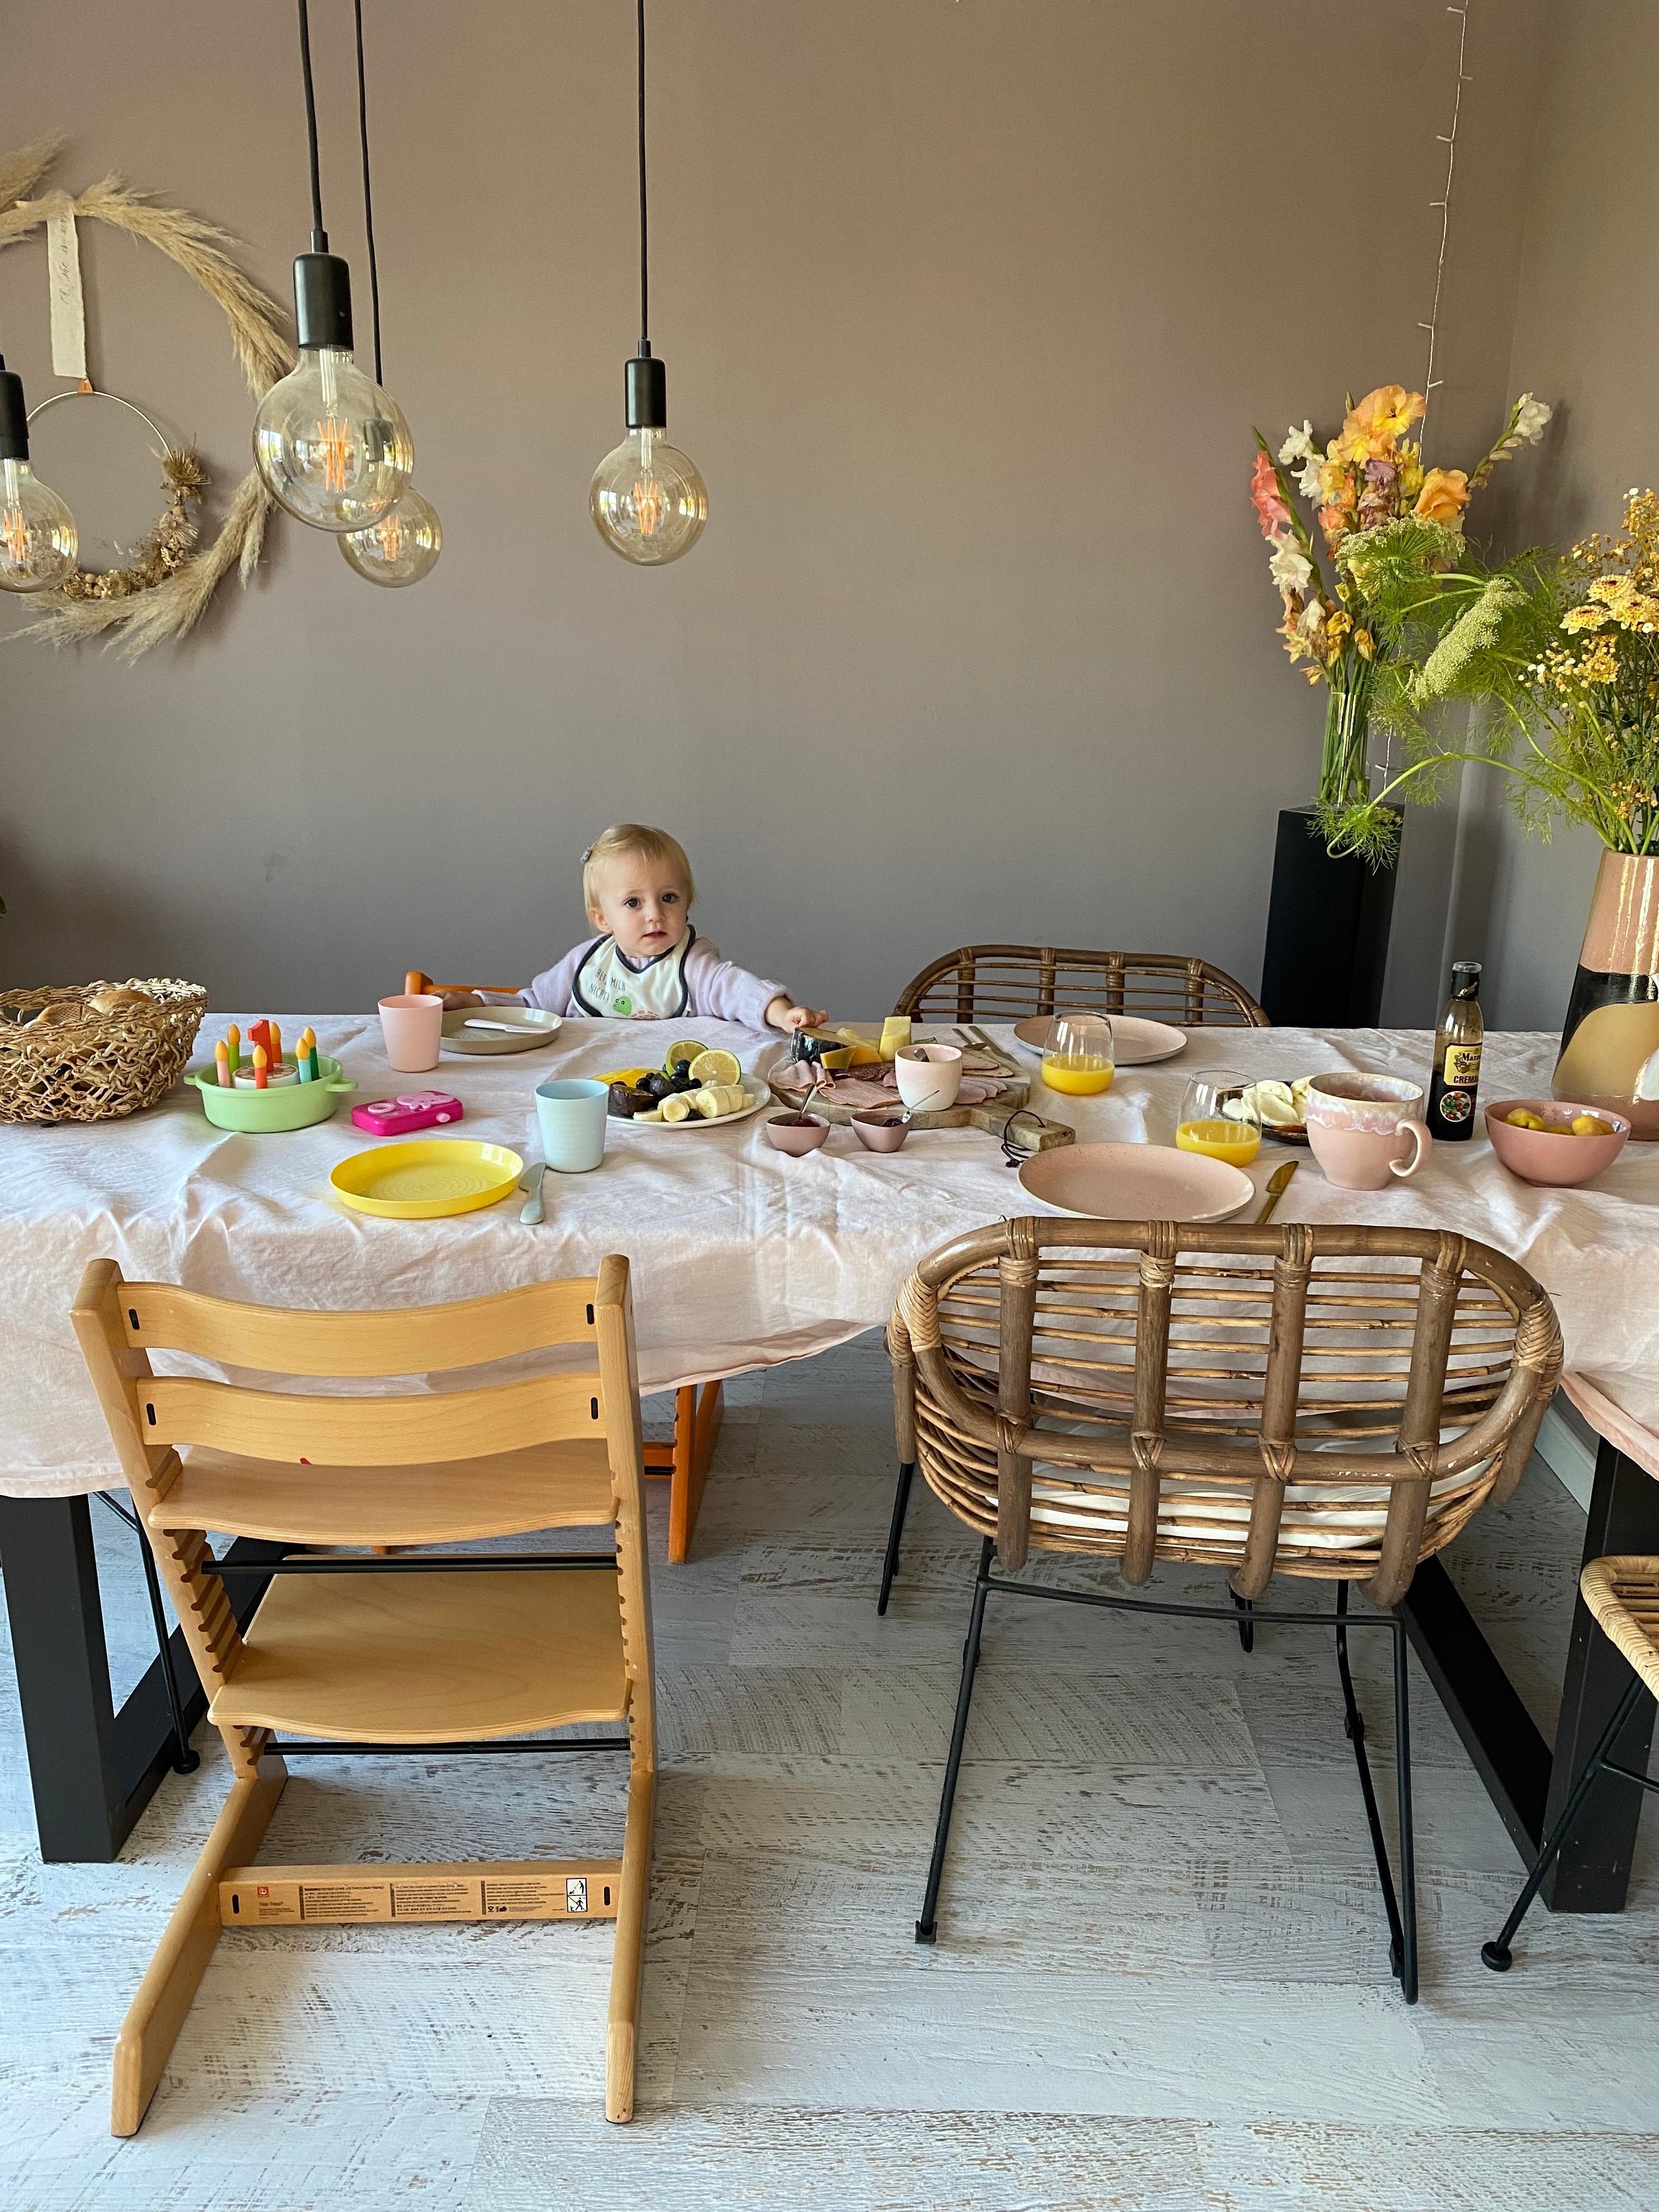 Frühstück mit Kind
#esstisch #frühstückstisch #wochenendfrühstück #couchstyle